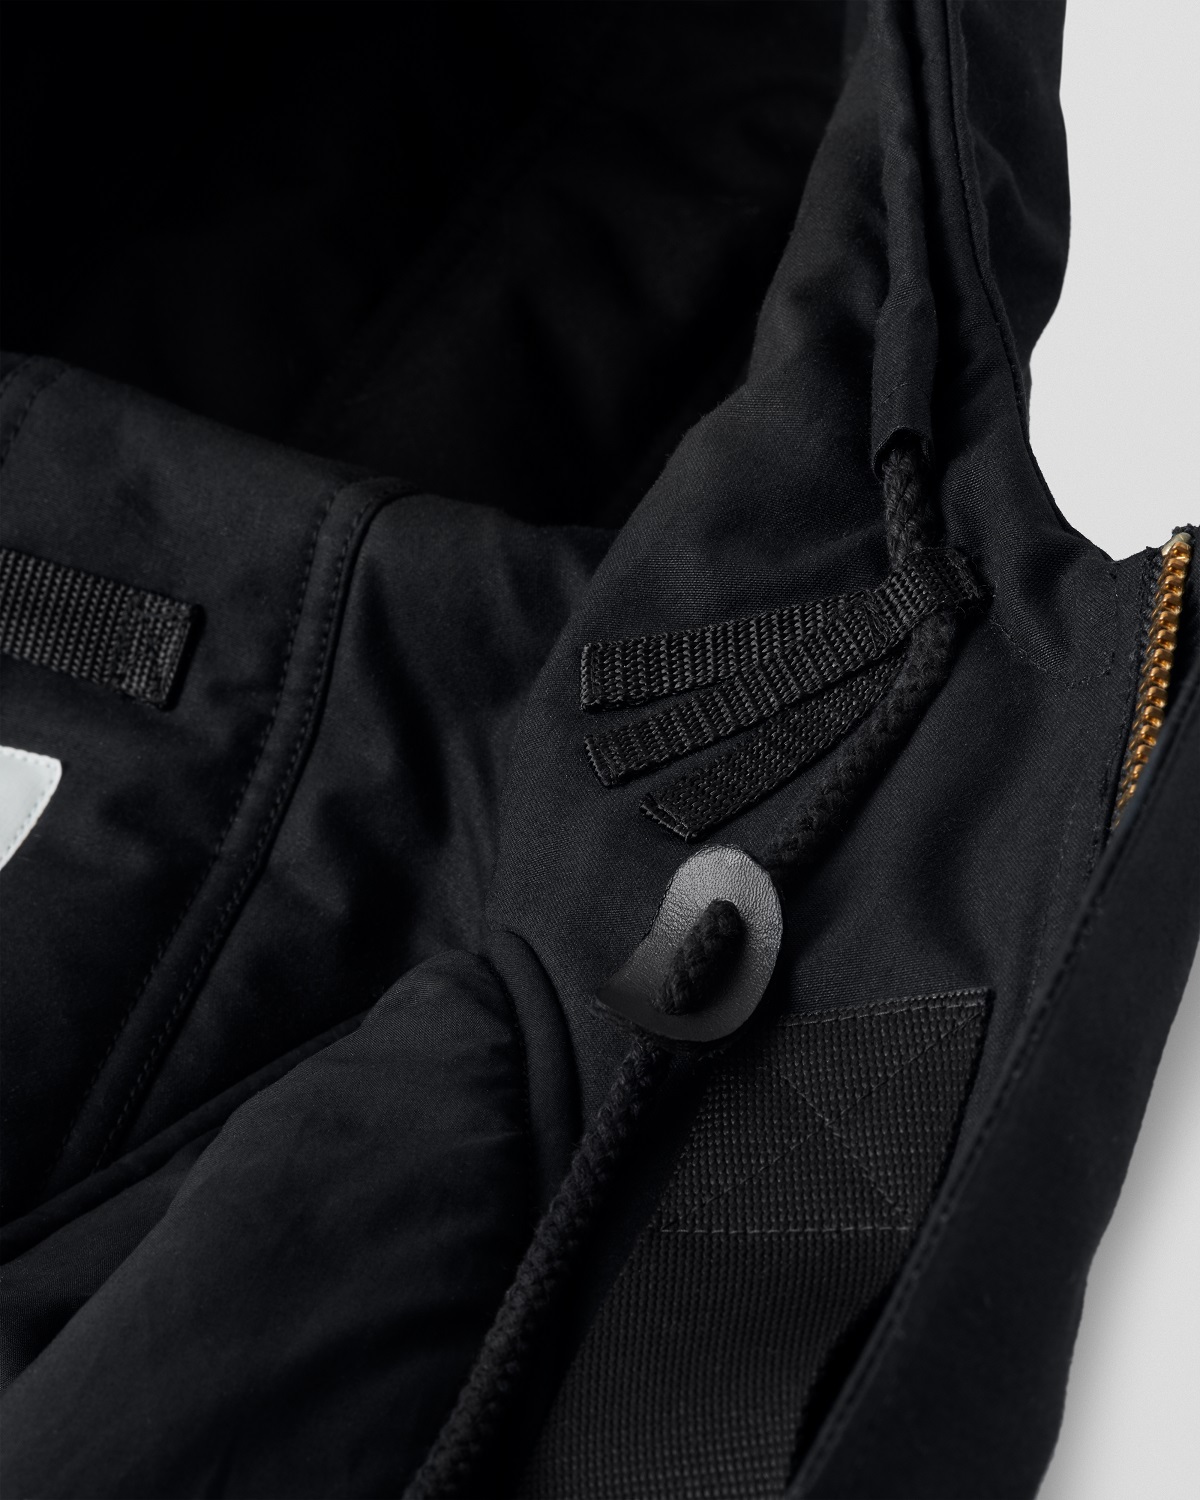 APPLIED ART FORMS Hooded Deck Jacket in Black XXL